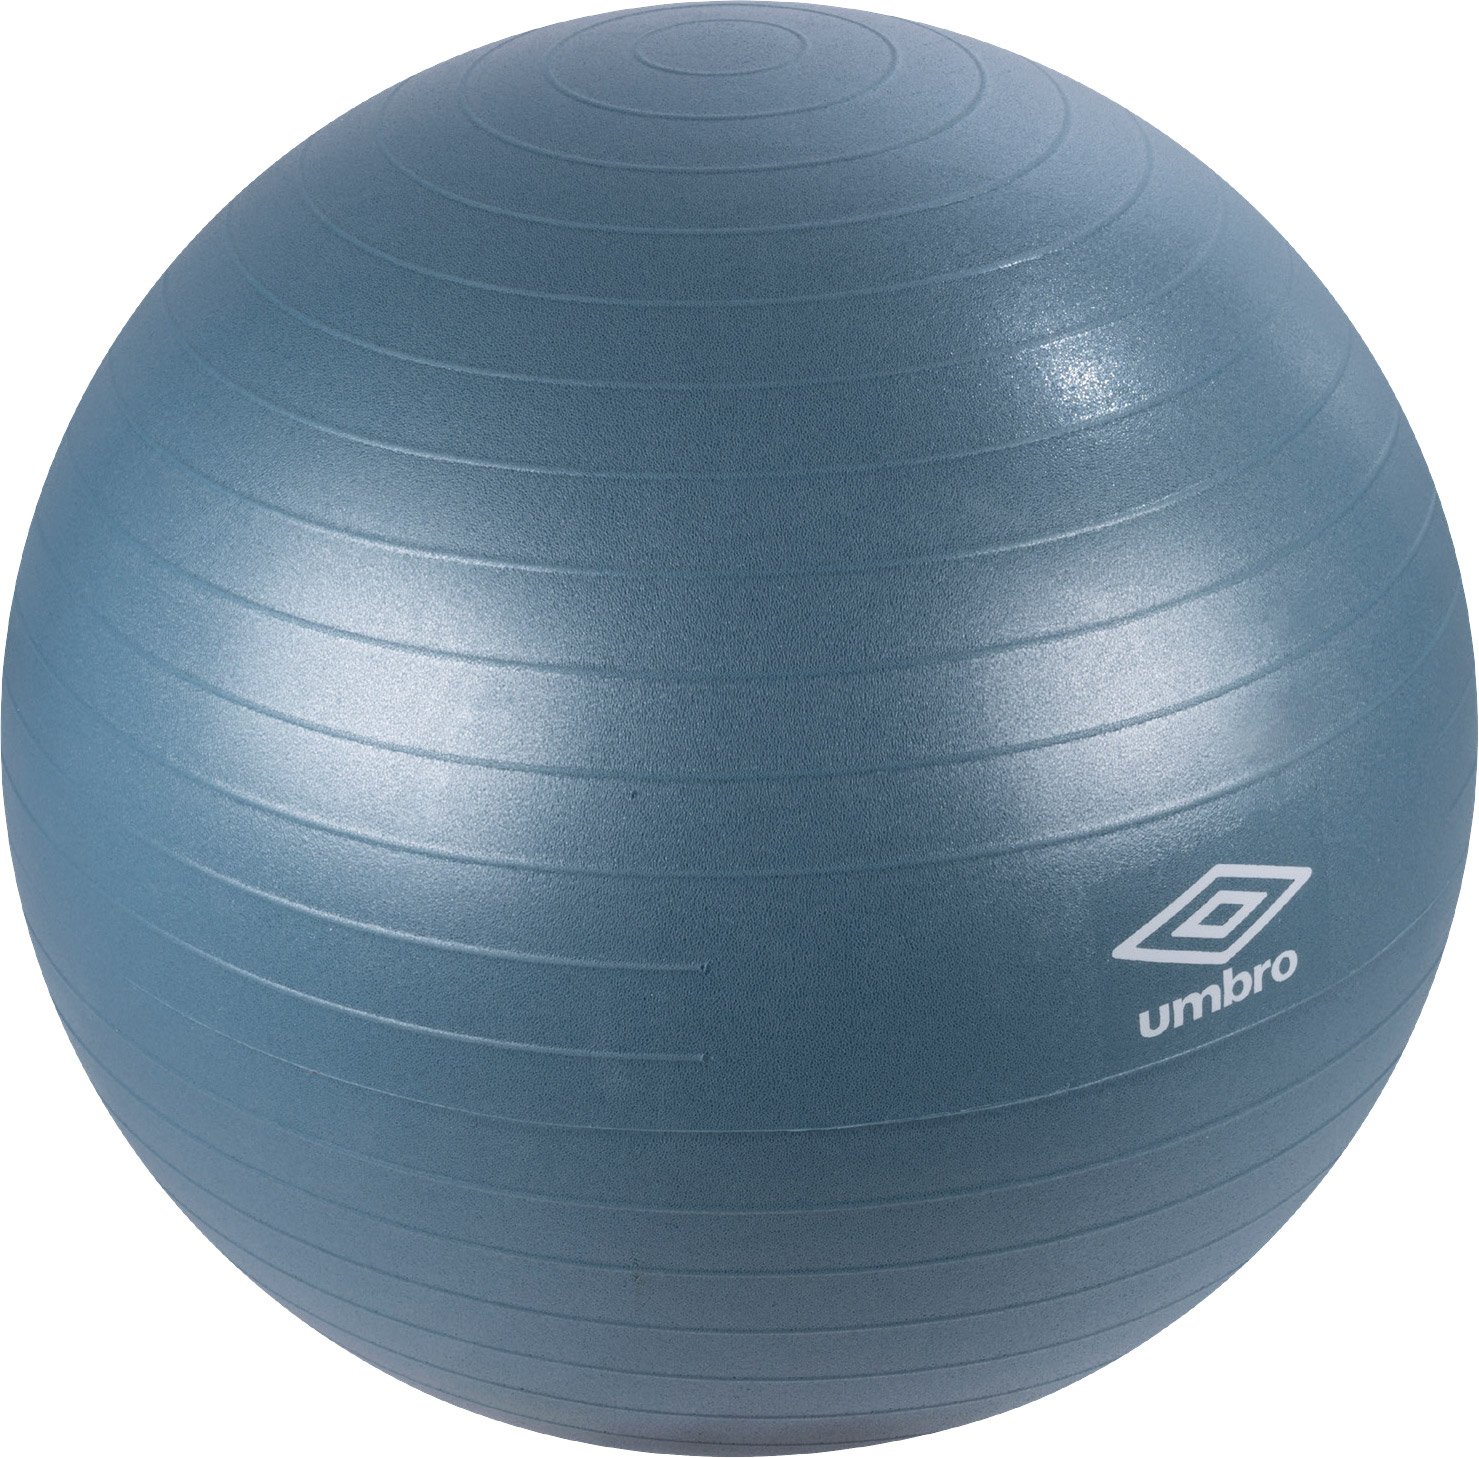 Umbro Pilatesboll Blå 65 cm